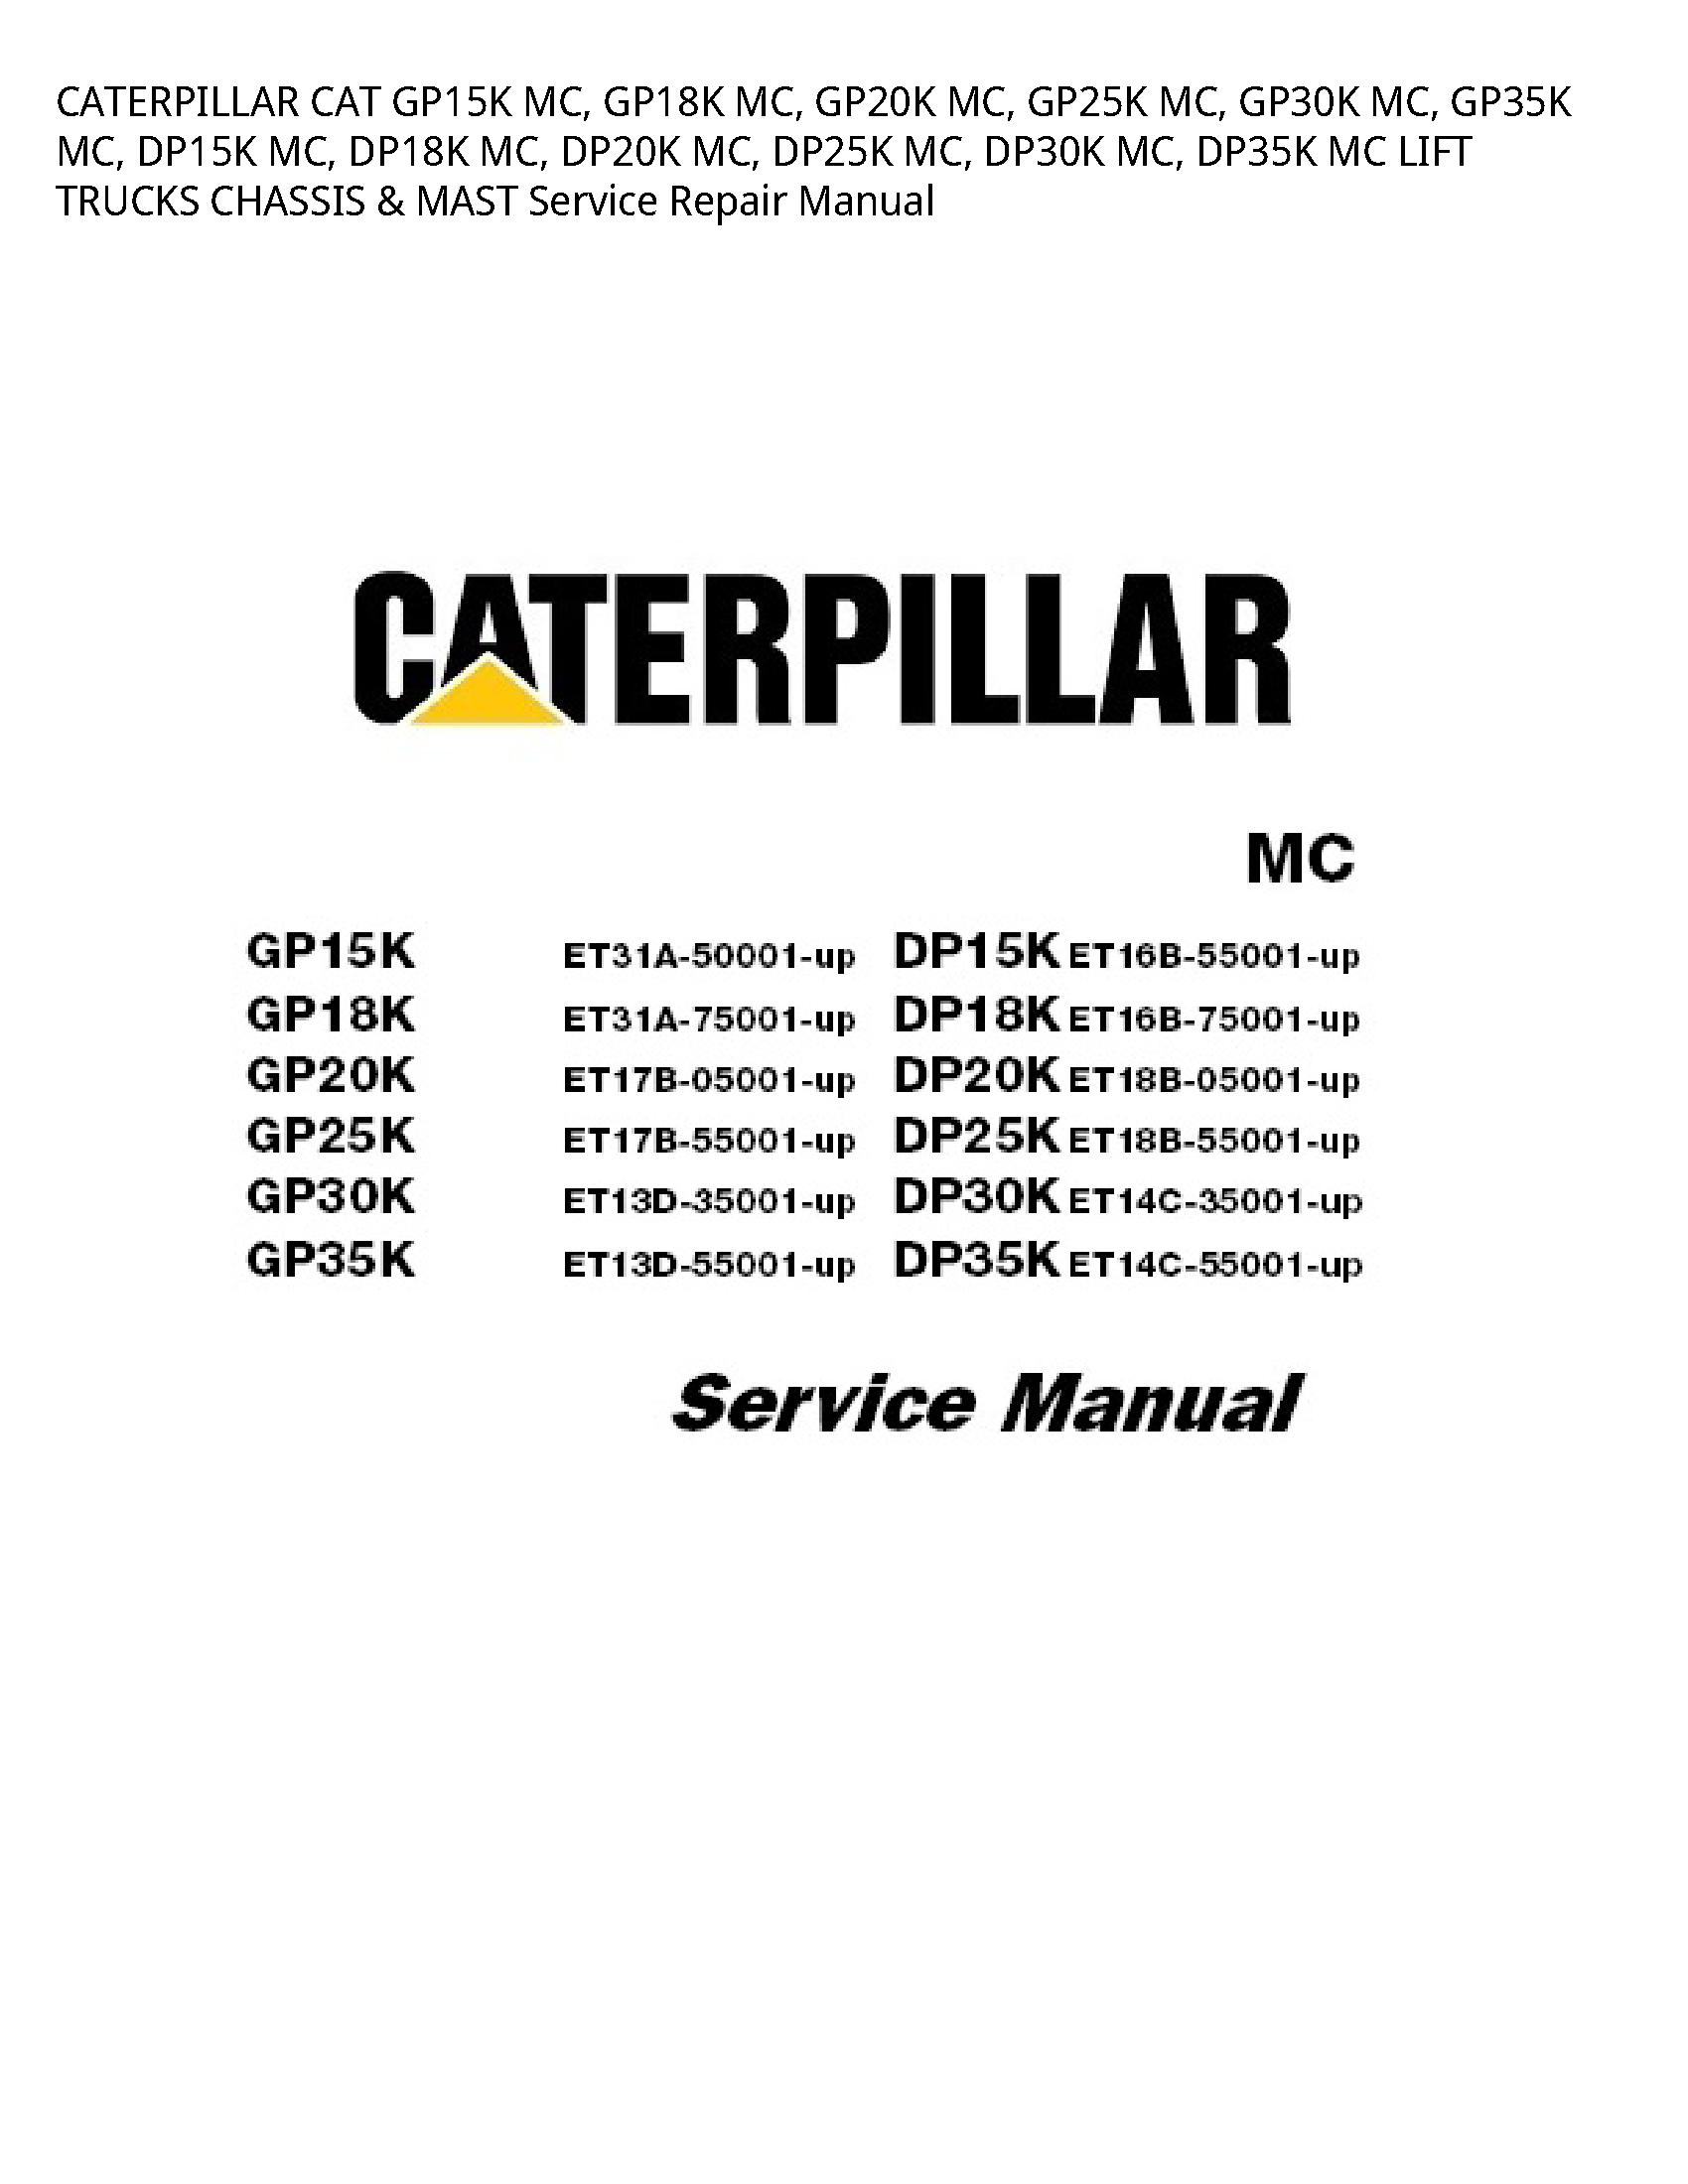 Caterpillar GP15K CAT MC manual